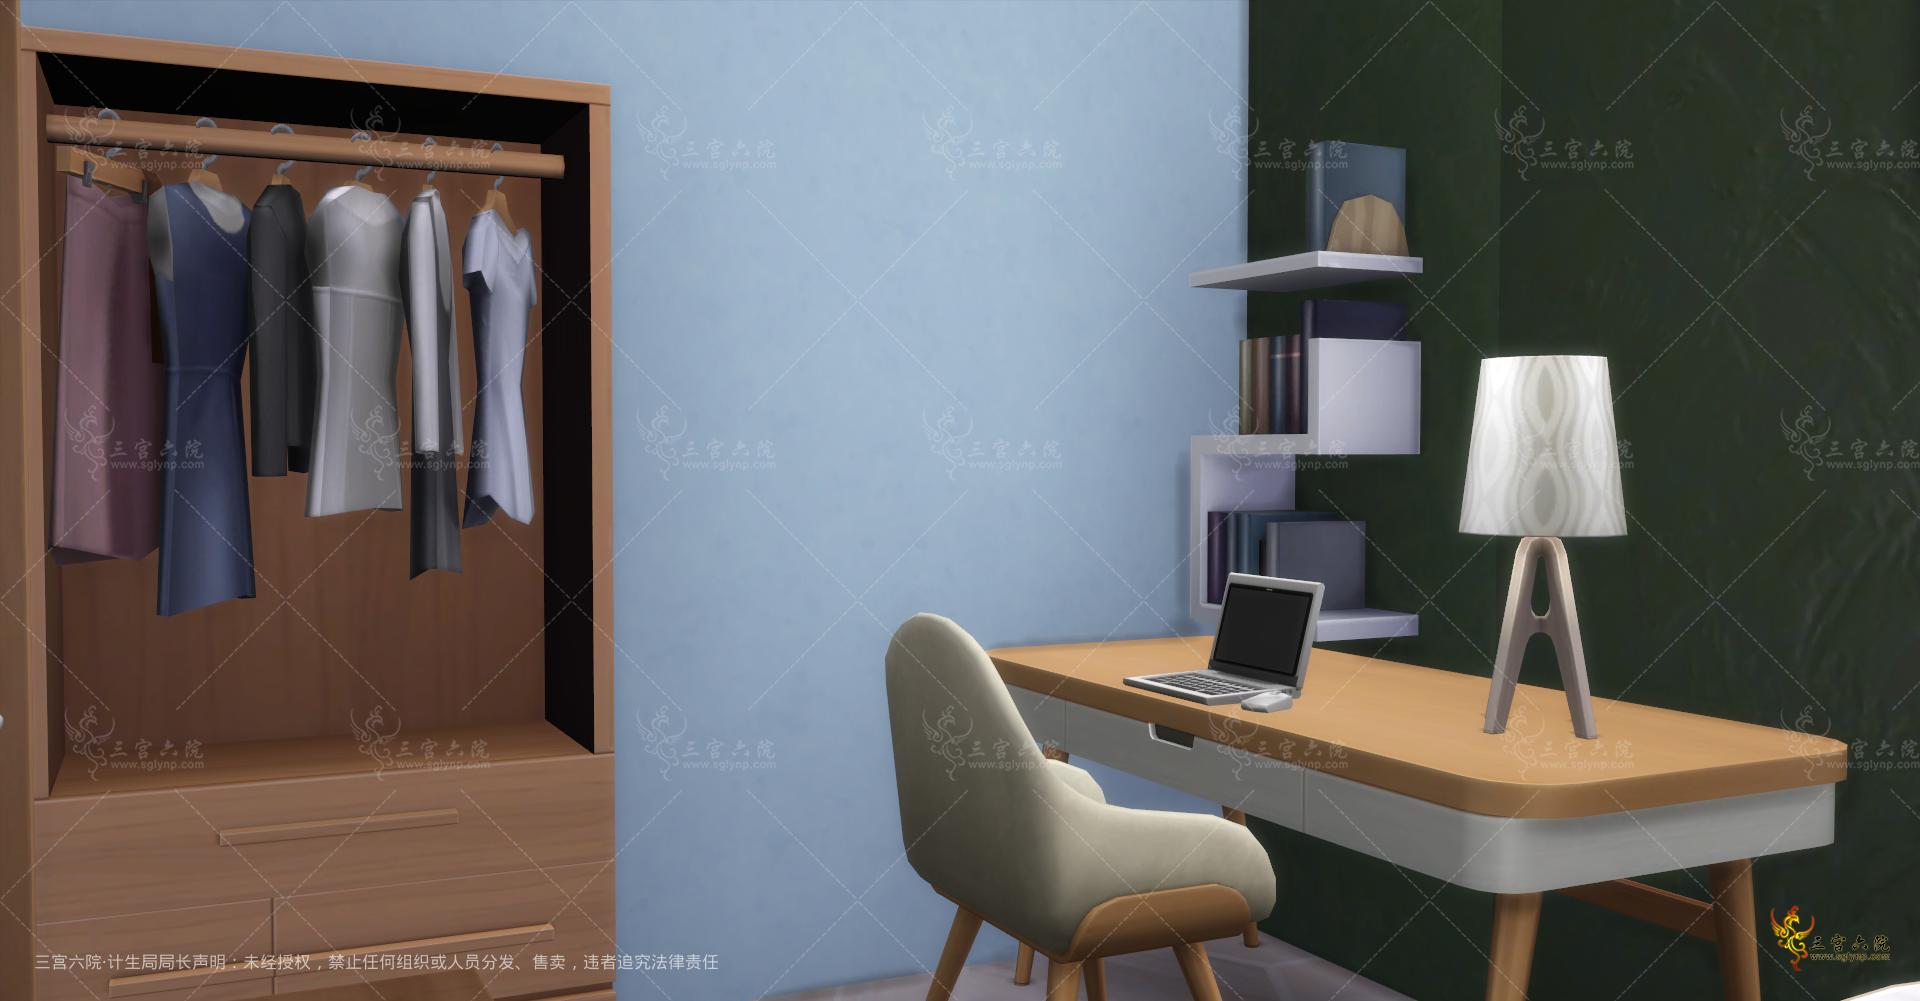 Sims 4 Screenshot 2022.01.01 - 21.09.54.90.png